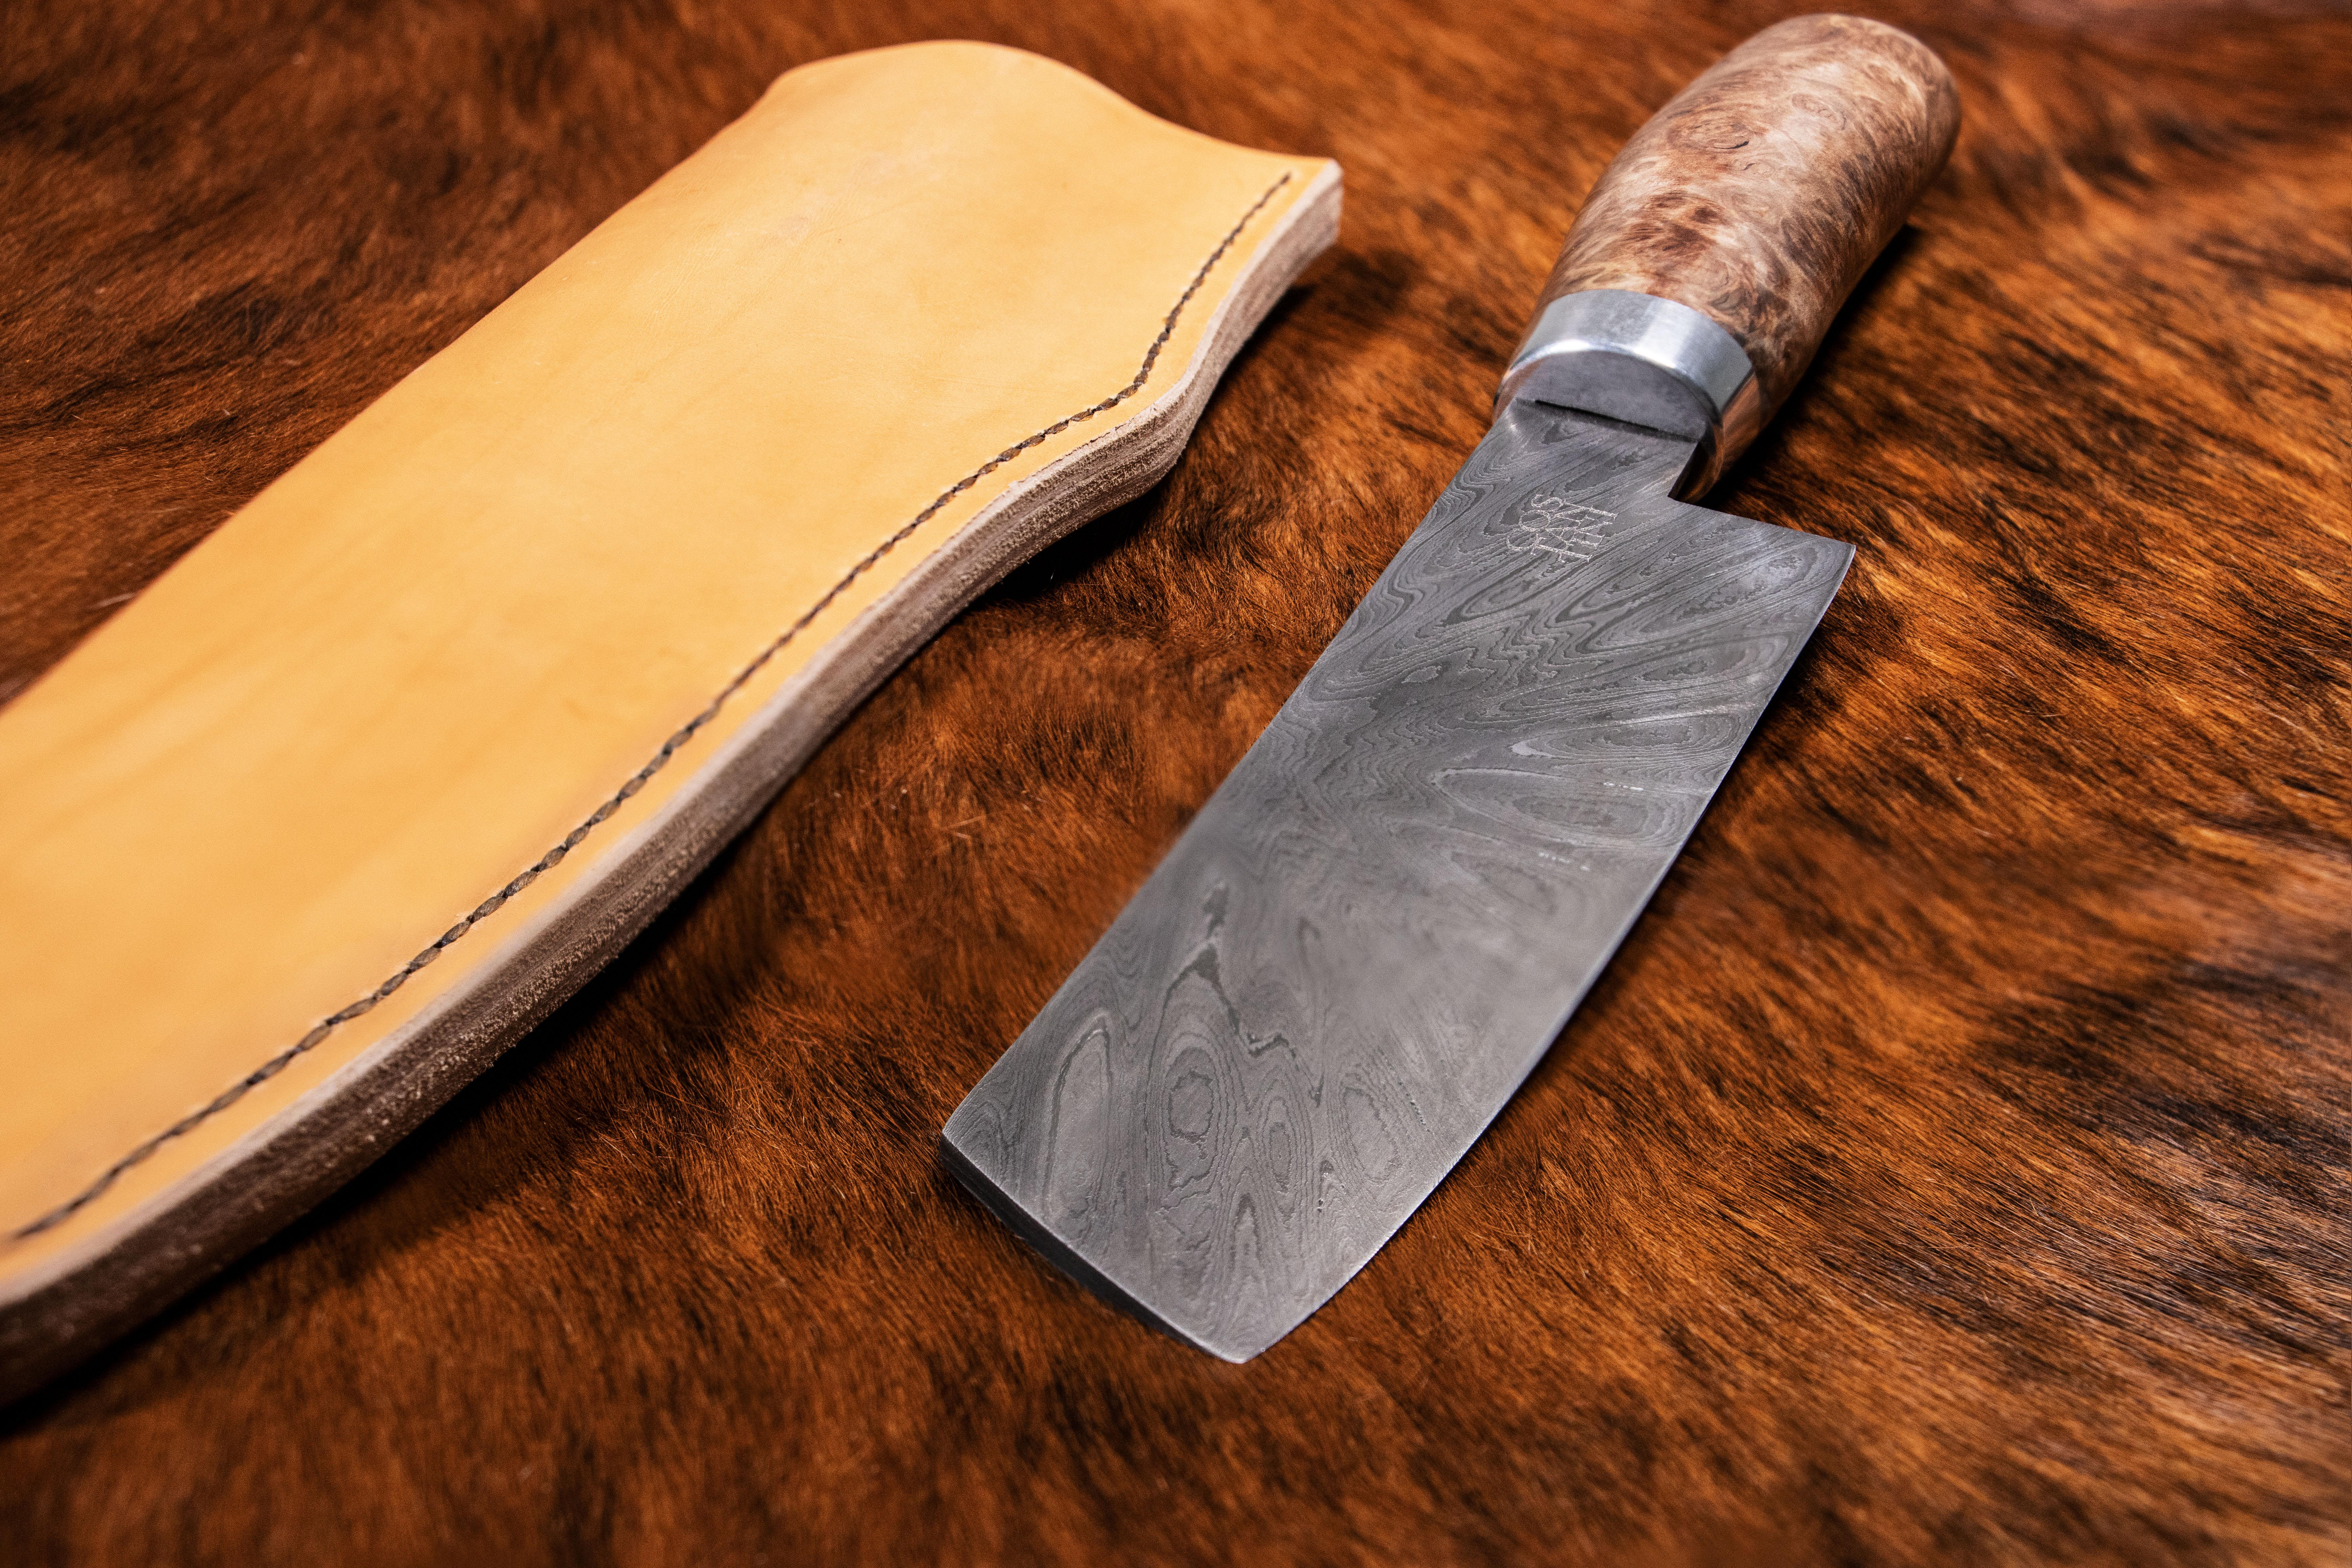 Couteau culinaire forgé en acier Damas personnalisable de Costantini Design.

Ce couteau fait à la main est disponible tel qu'illustré ou avec une lame San Mai, et le manche est disponible dans différents bois, renseignez-vous pour plus de